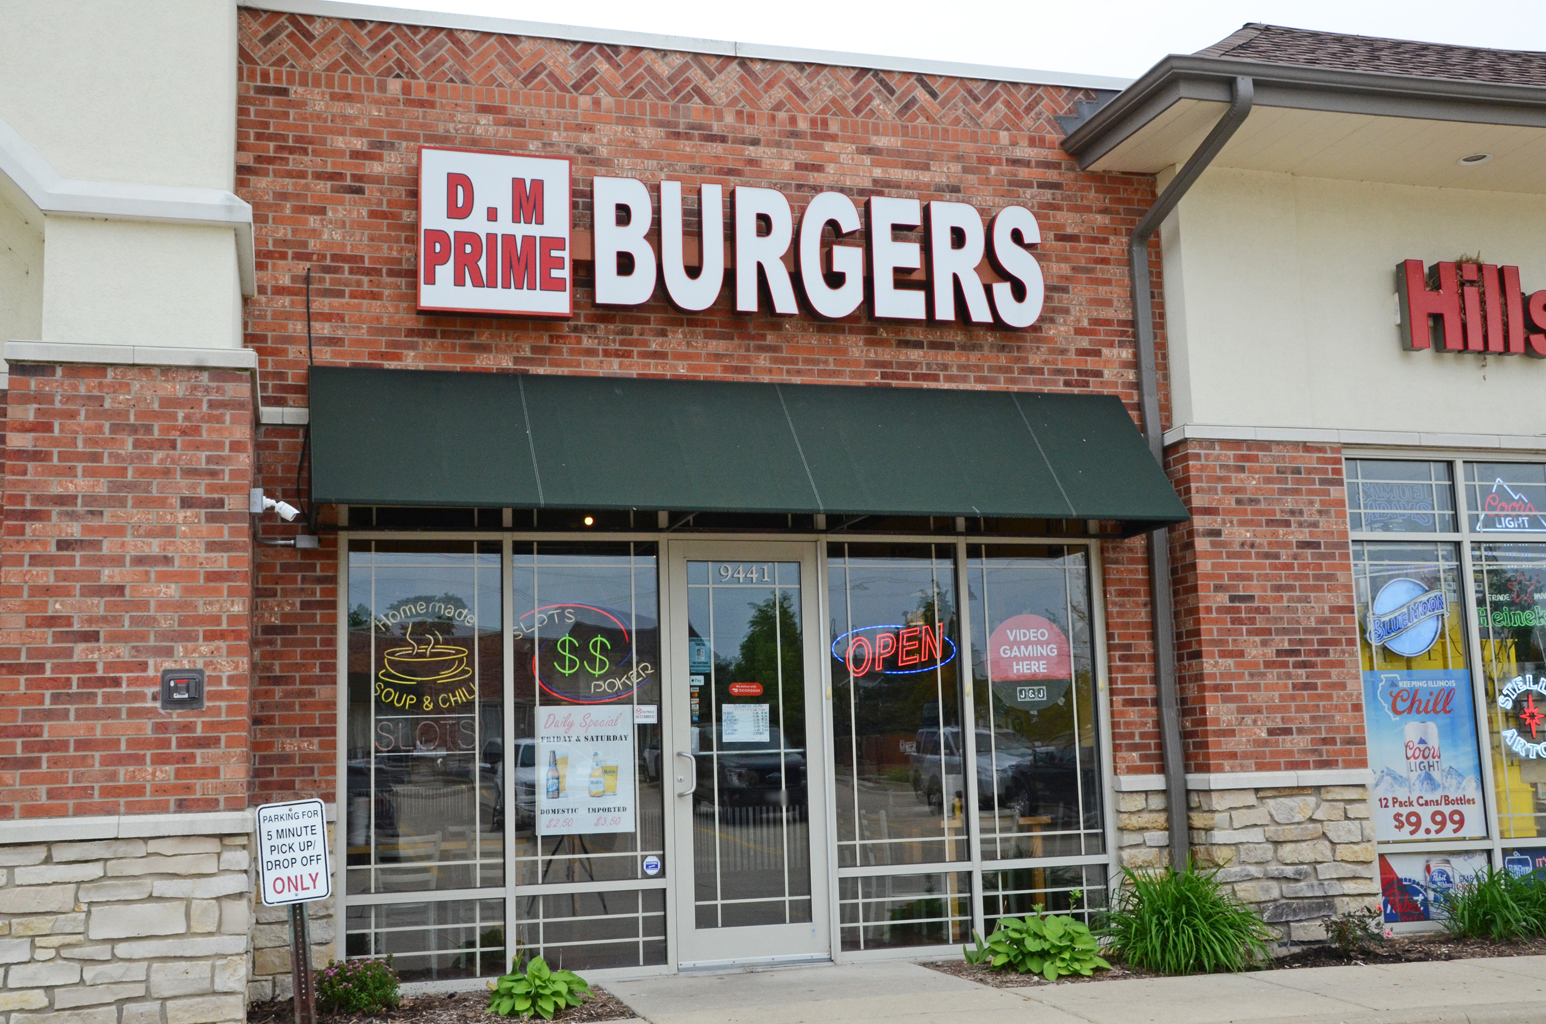 D.M. Prime Burgers